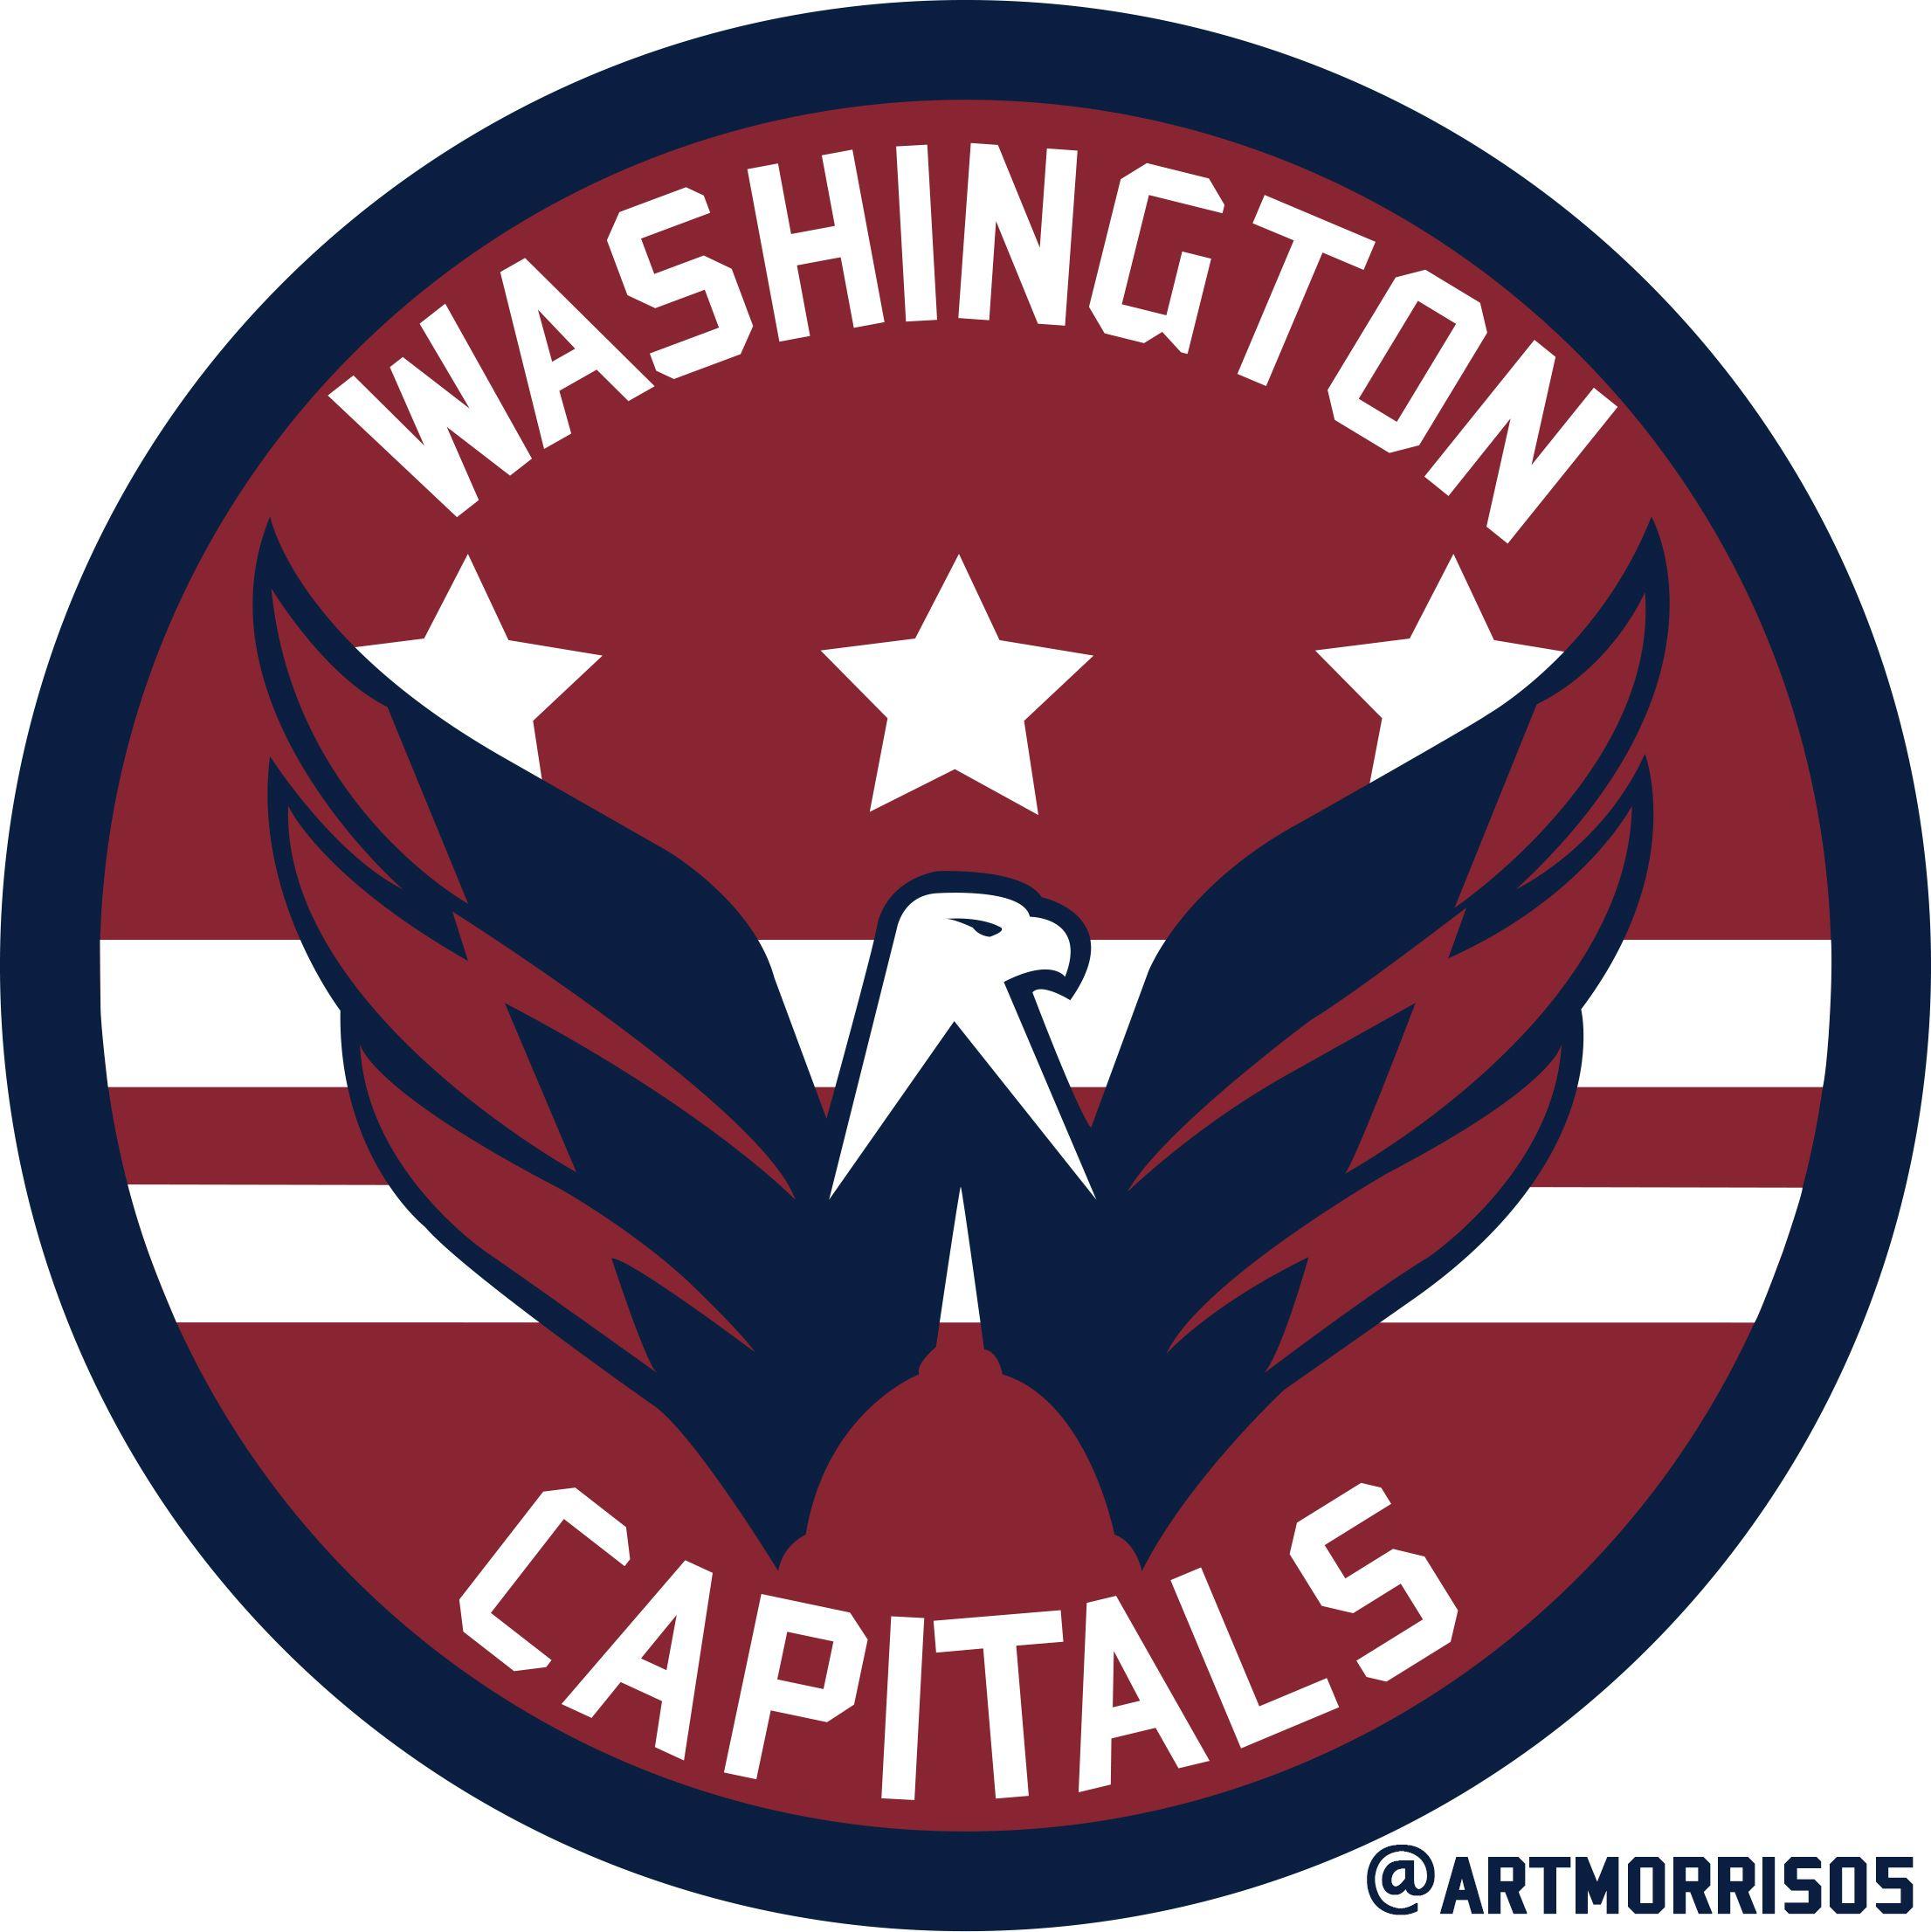 Washington Capitals Logo - Washington Capitals Jersey Creamer's Sports Logos